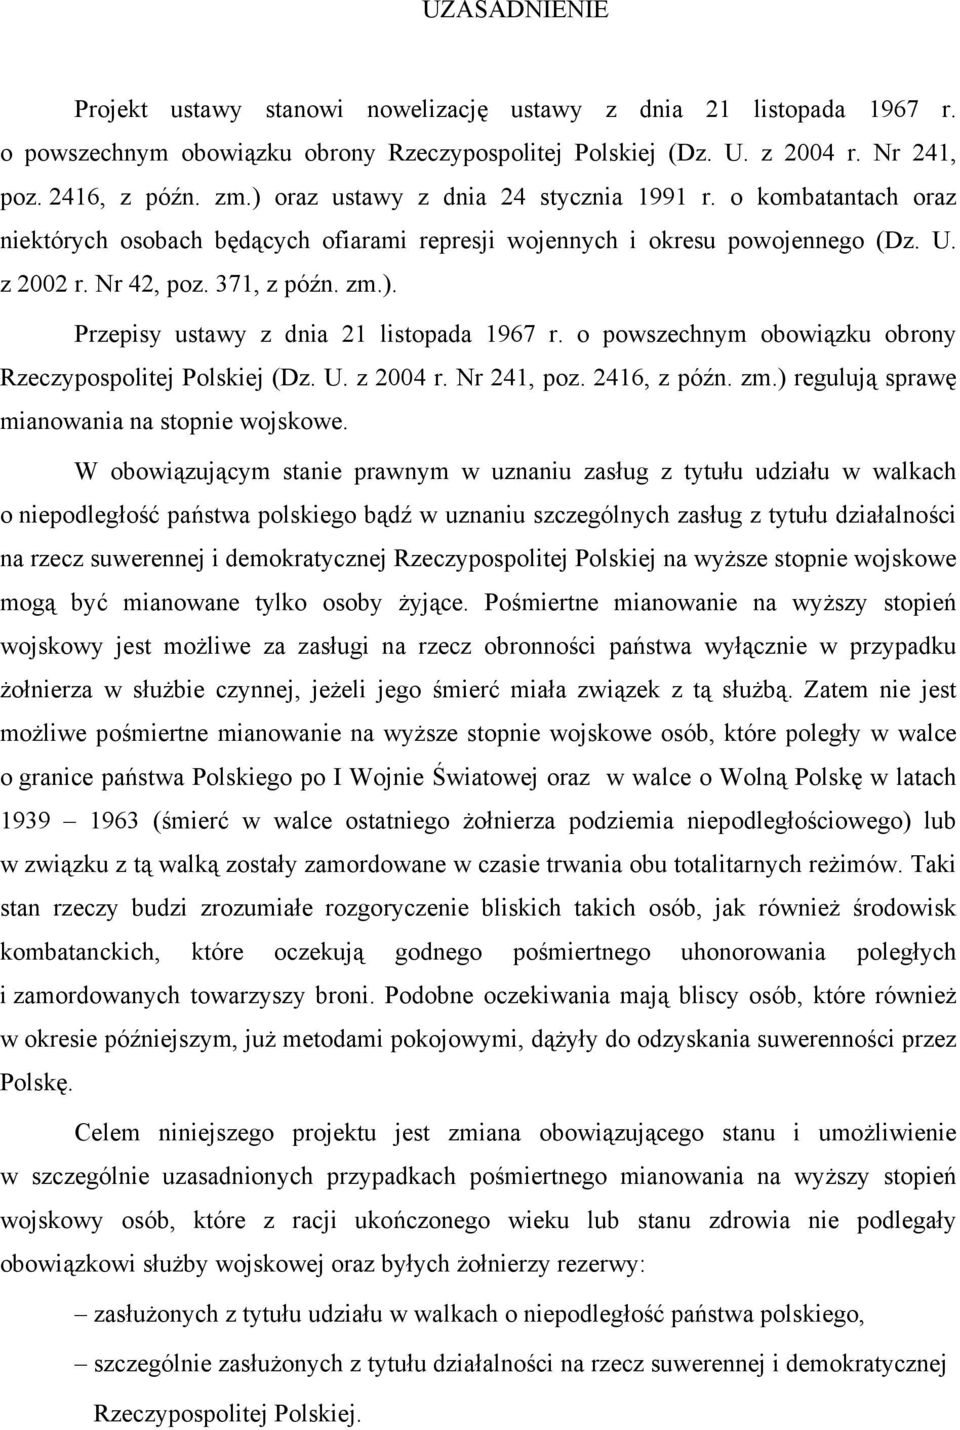 o powszechnym obowiązku obrony Rzeczypospolitej Polskiej (Dz. U. z 2004 r. Nr 241, poz. 2416, z późn. zm.) regulują sprawę mianowania na stopnie wojskowe.